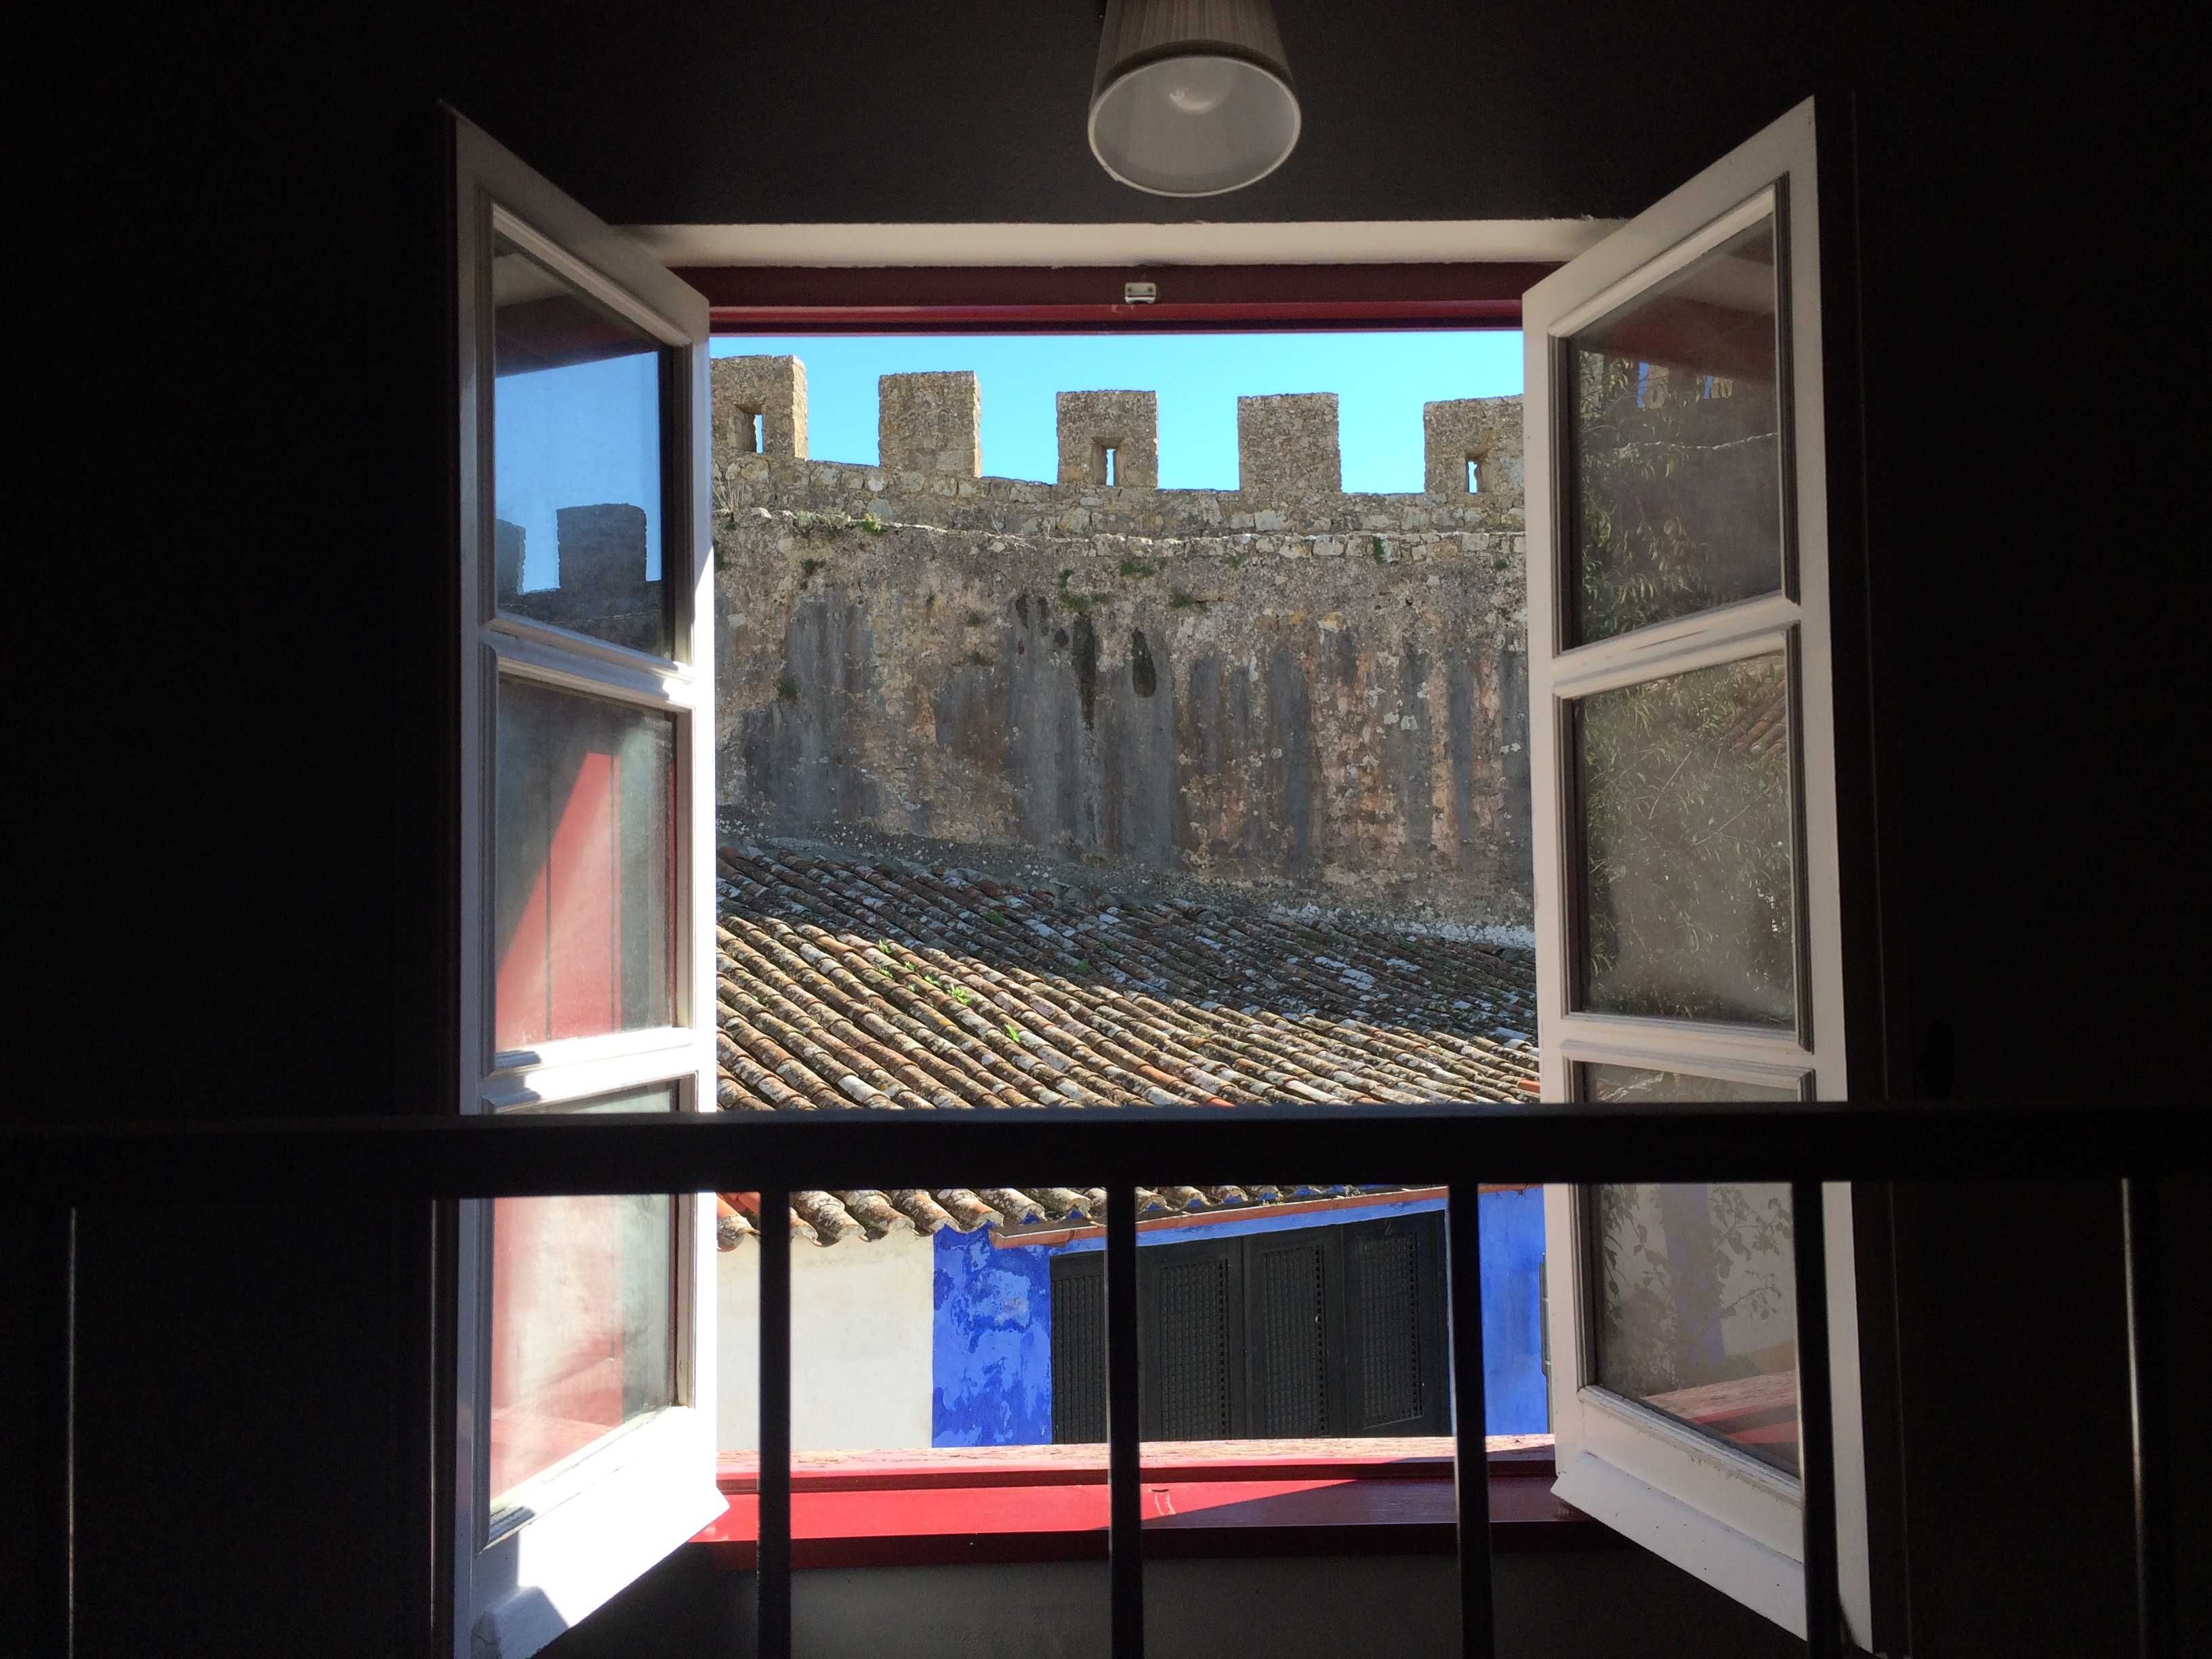 Óbidos - Moradia no interior das muralhas